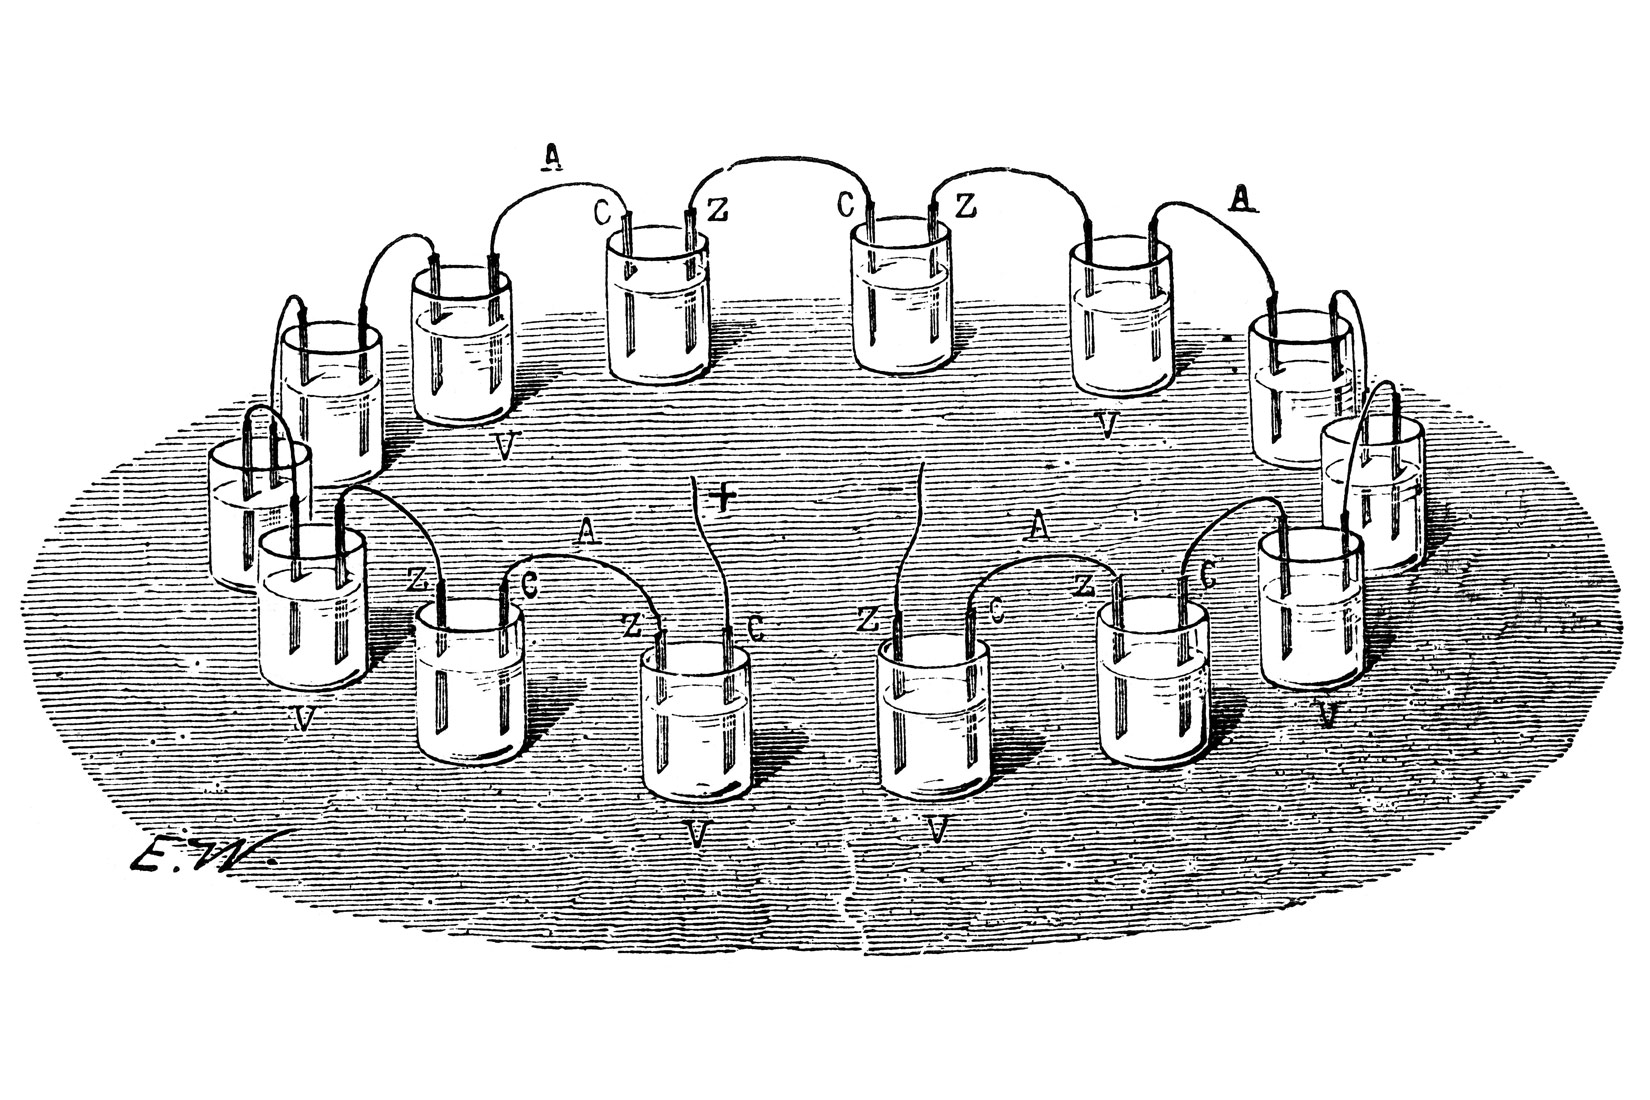 Povijesna ilustracija verzije baterije koju je 1800. godine predložio talijanski fizičar Alessandro Volta.